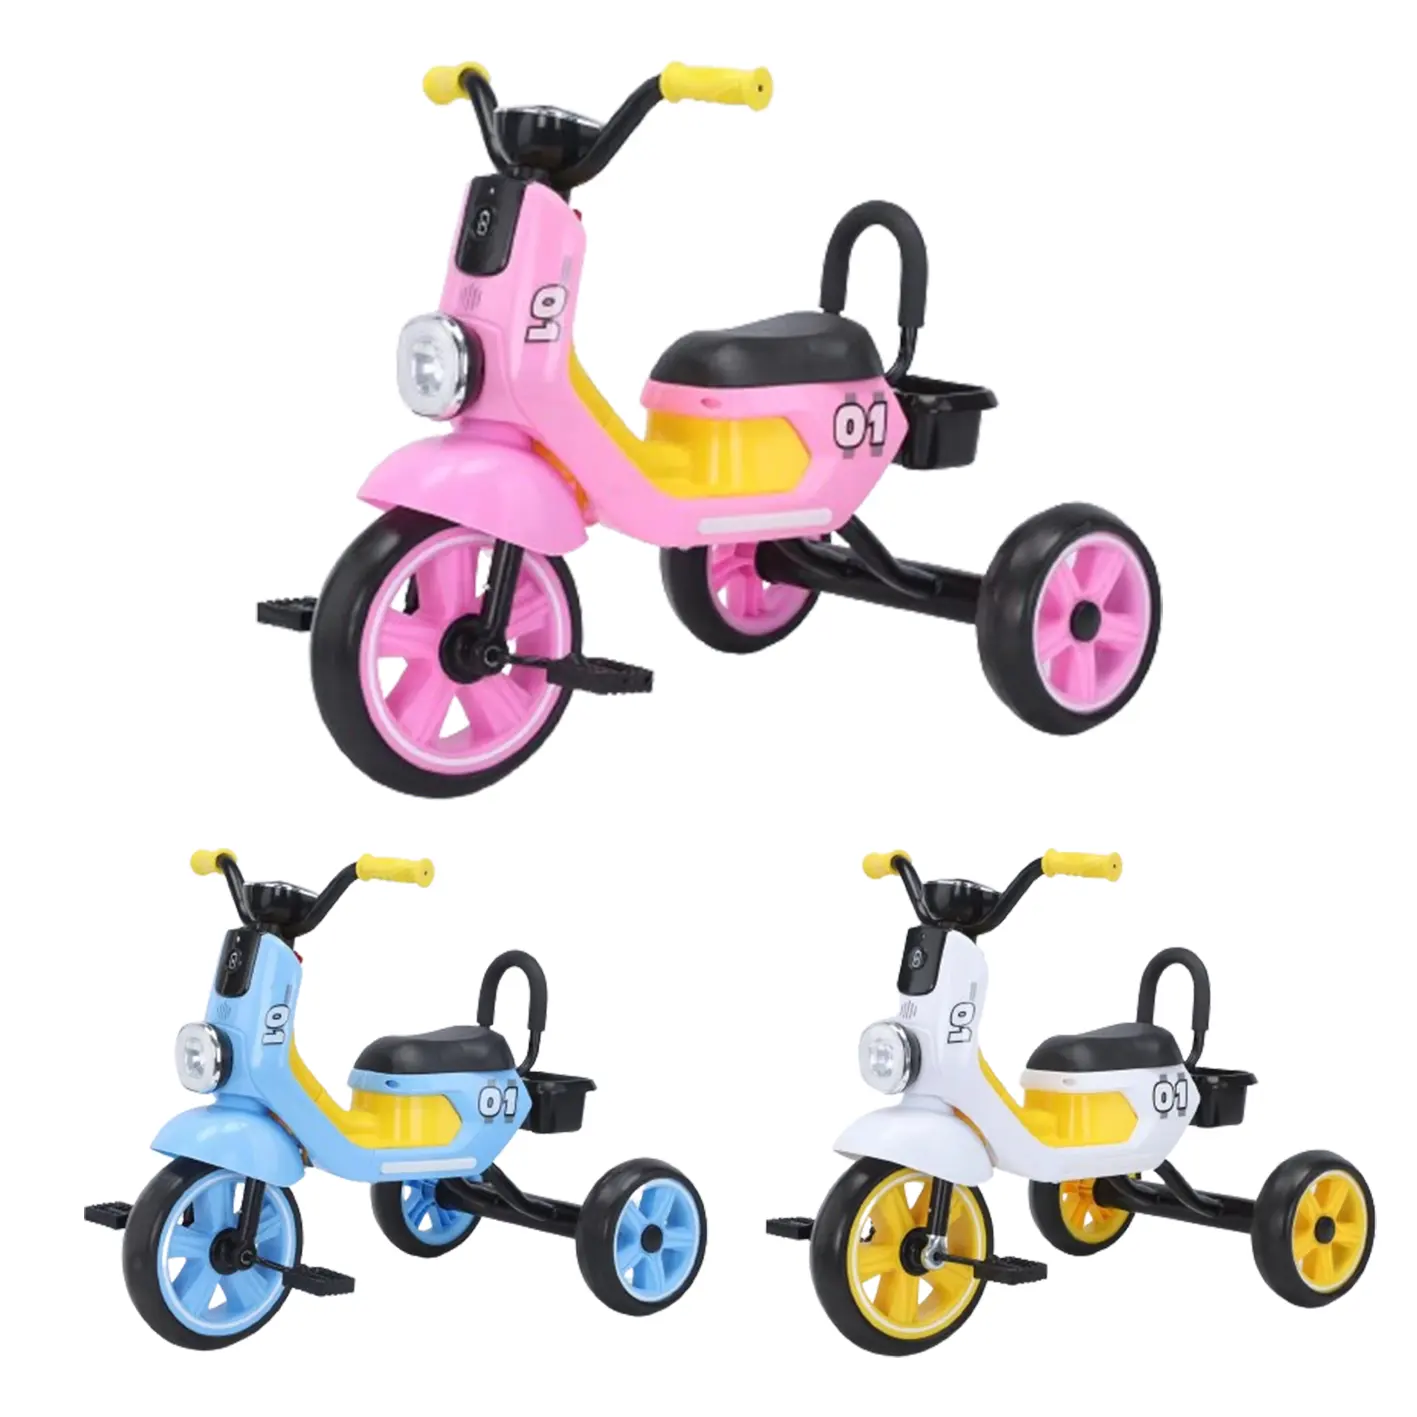 Factory Simple Kids 3-Rad-Trike für 3-6 Jahre altes Baby-Pedal-Dreirad